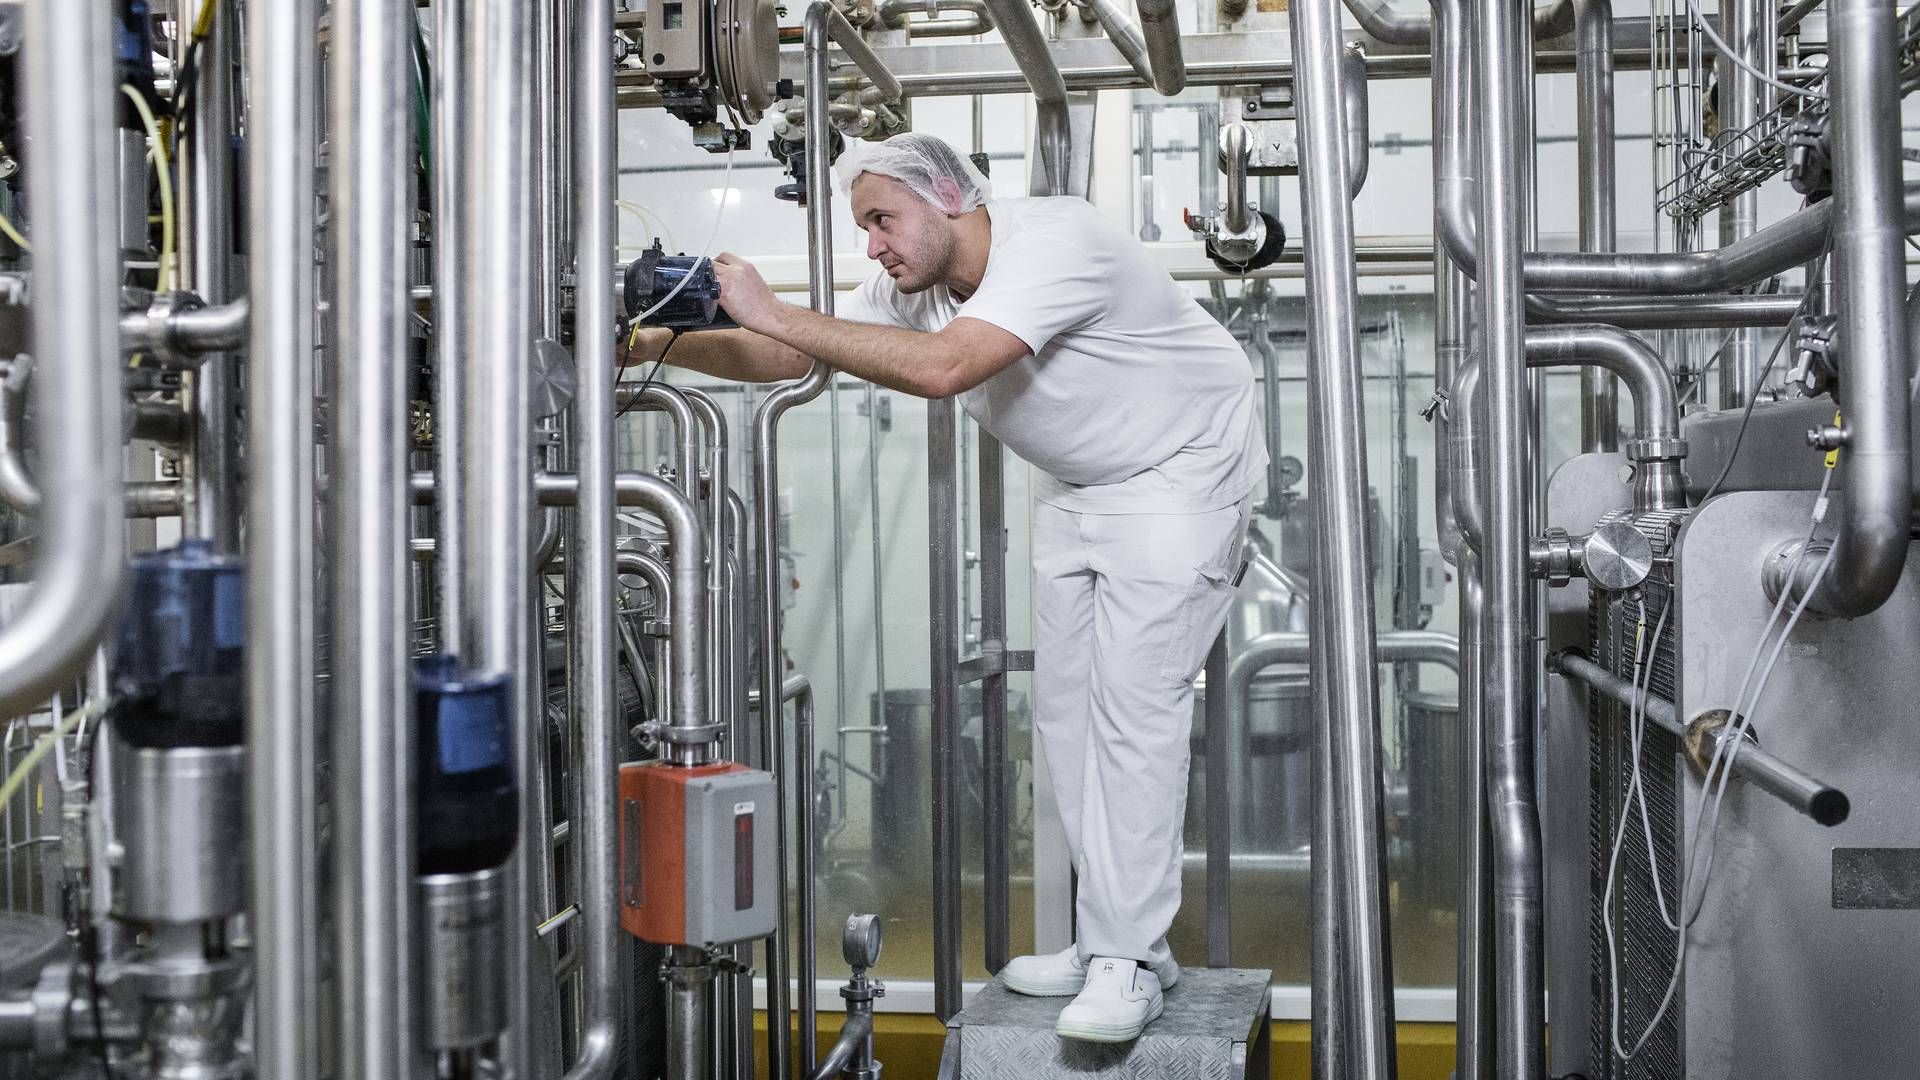 Arla udvider nu sin produktion af mælkepulver i Pronsfeld markant med indvielsen af et nyt pulvertårn, der har været undervejs i tre år og kostet over 1,4 mia. kroner. | Foto: Casper Dalhoff/Ritzau Scanpix.